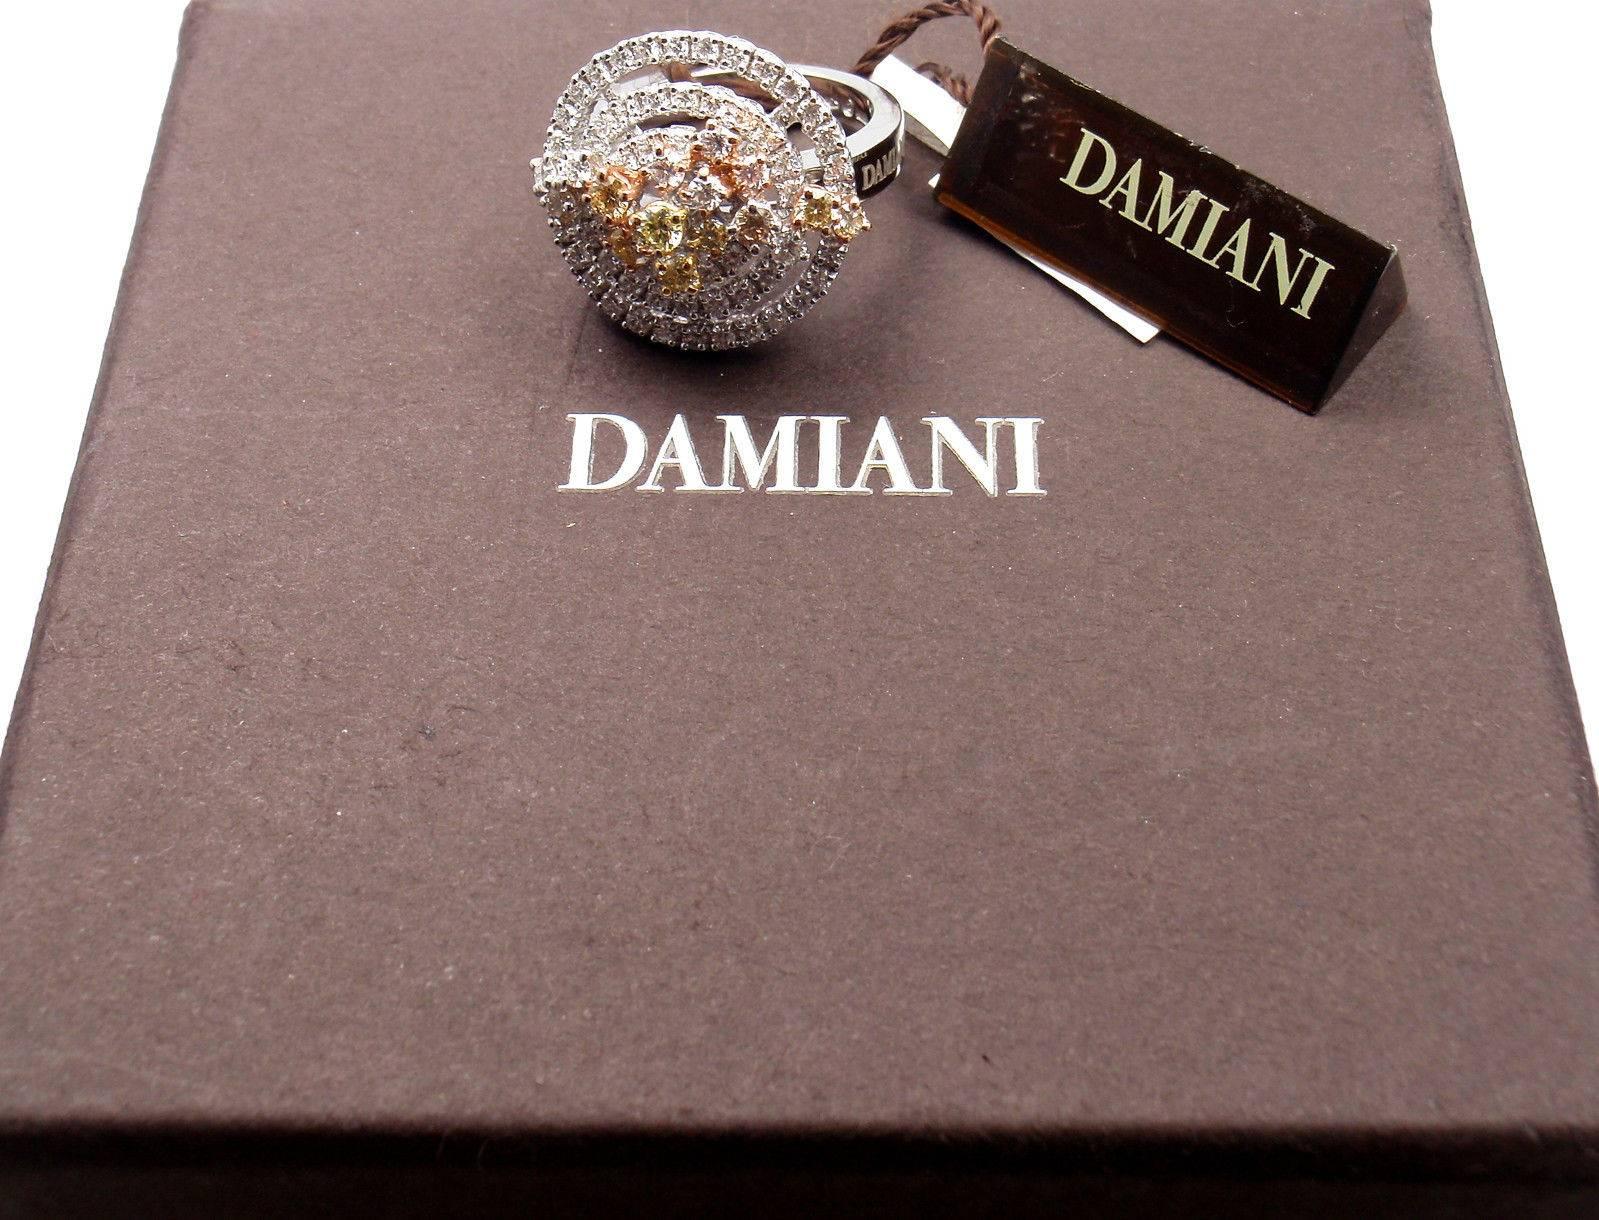 Damiani Sophia Loren Collection Diamond White Gold Ring 1